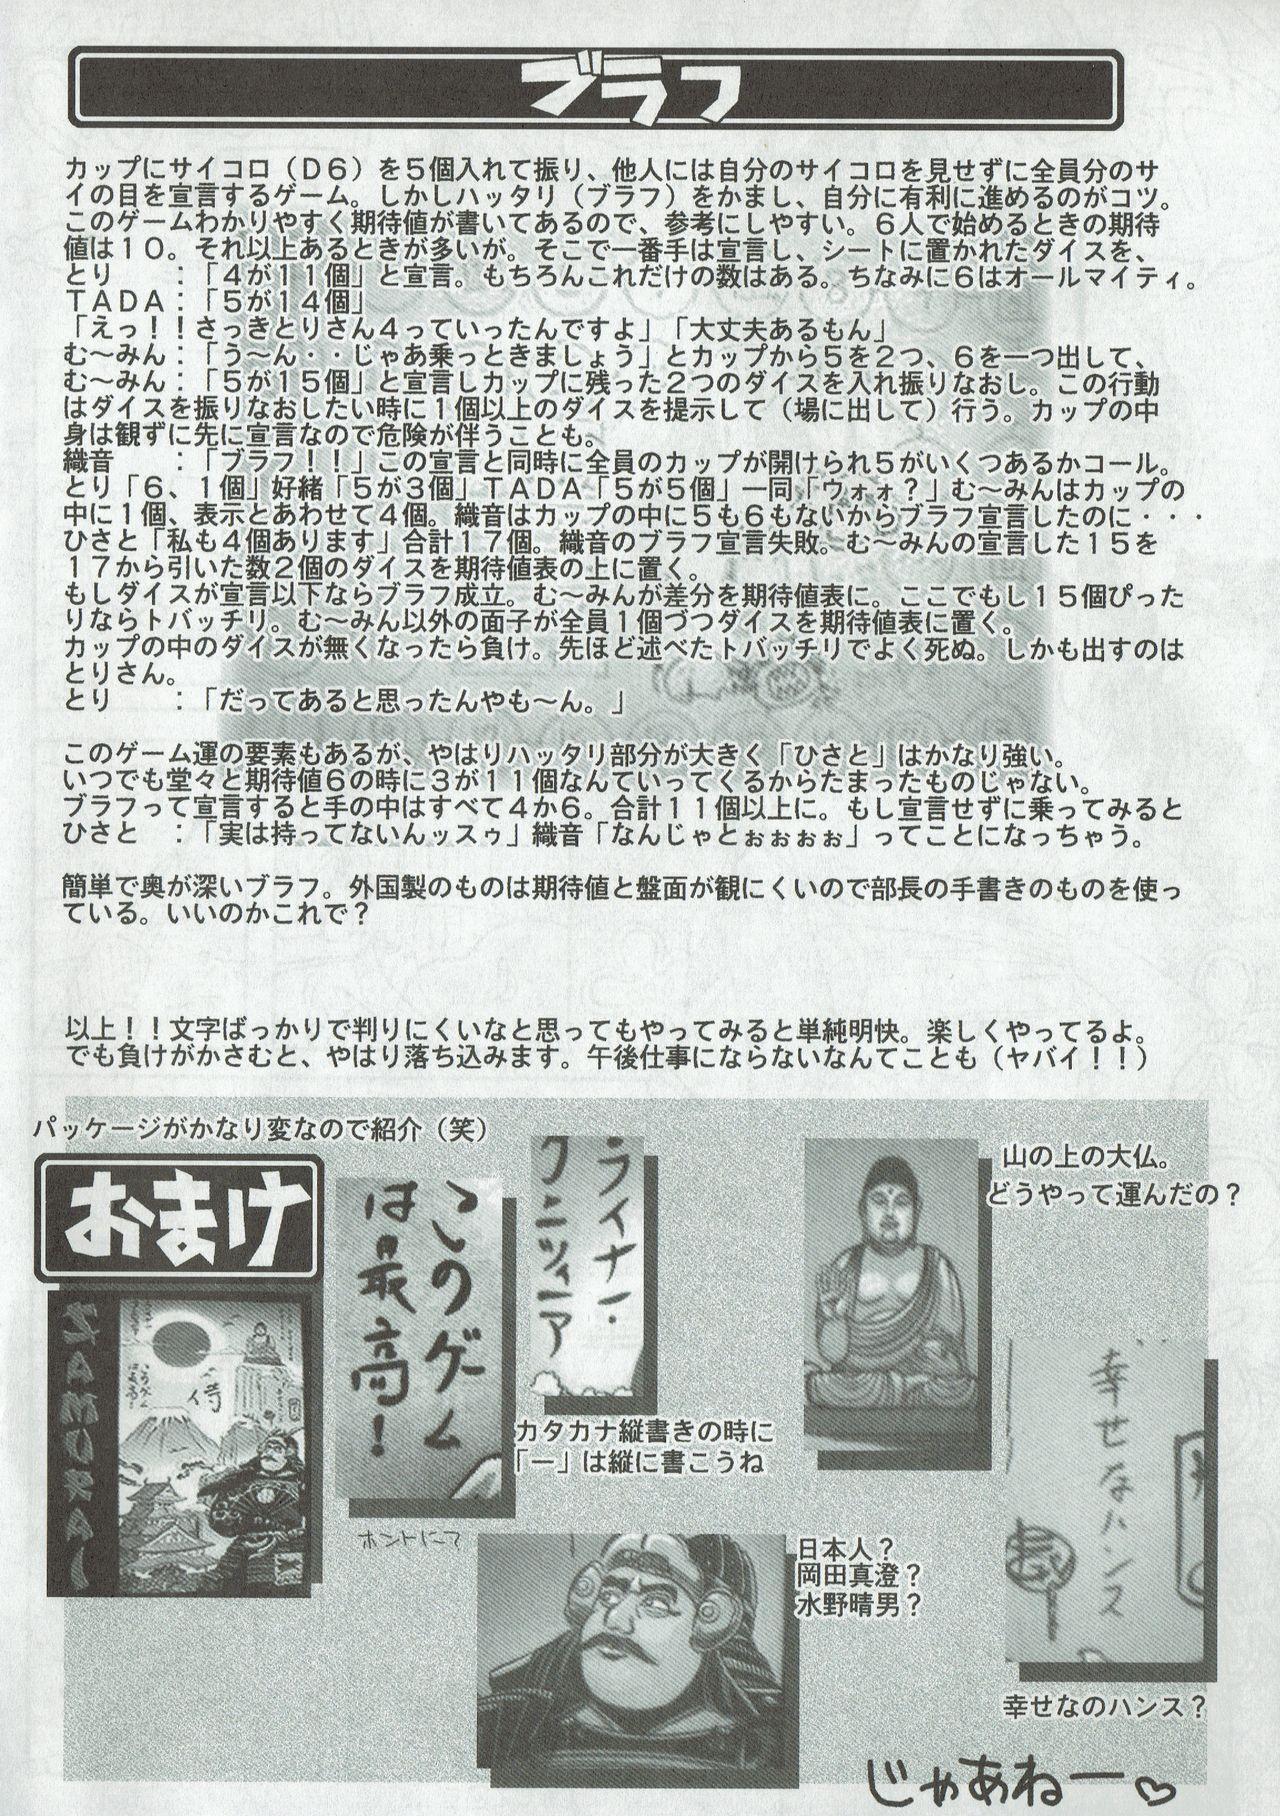 Arisu no Denchi Bakudan Vol. 08 12